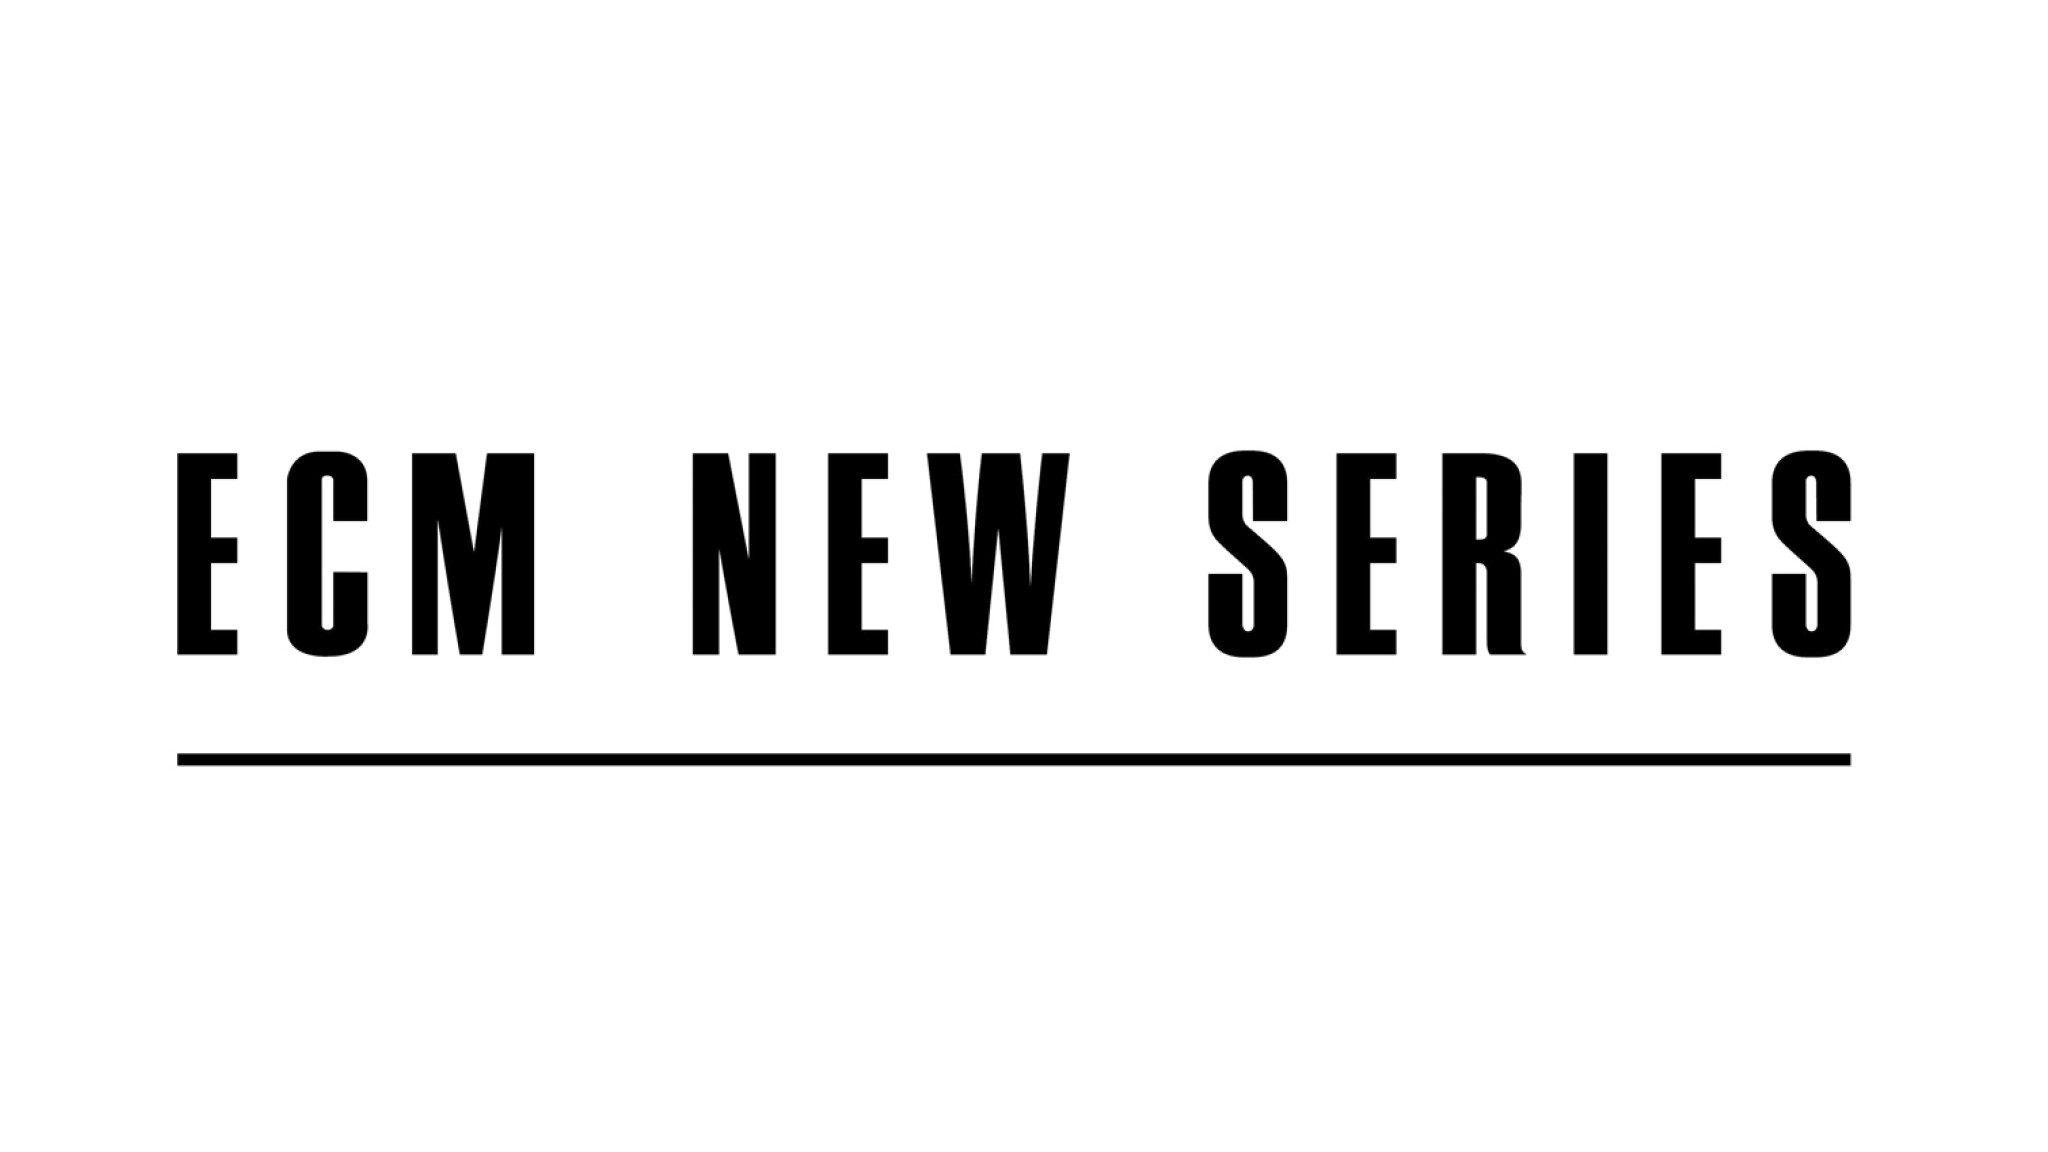 ECM New Series kündigt drei neue Veröffentlichungen an